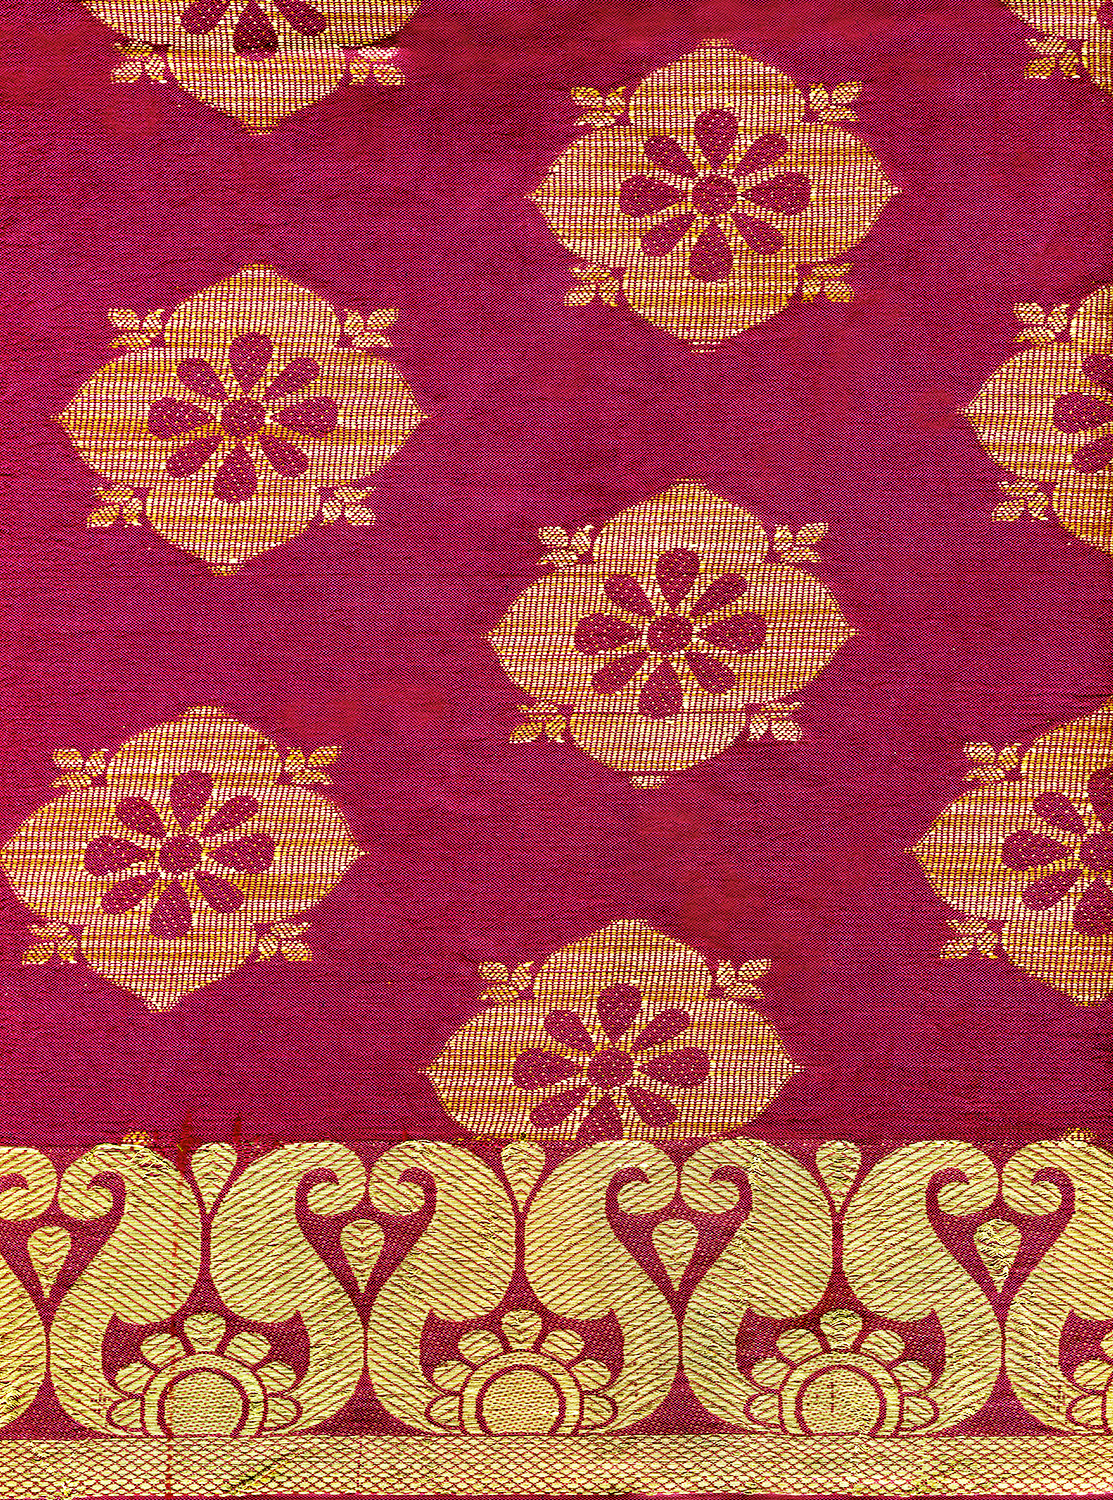  A textile piece from an Indian wedding sari 